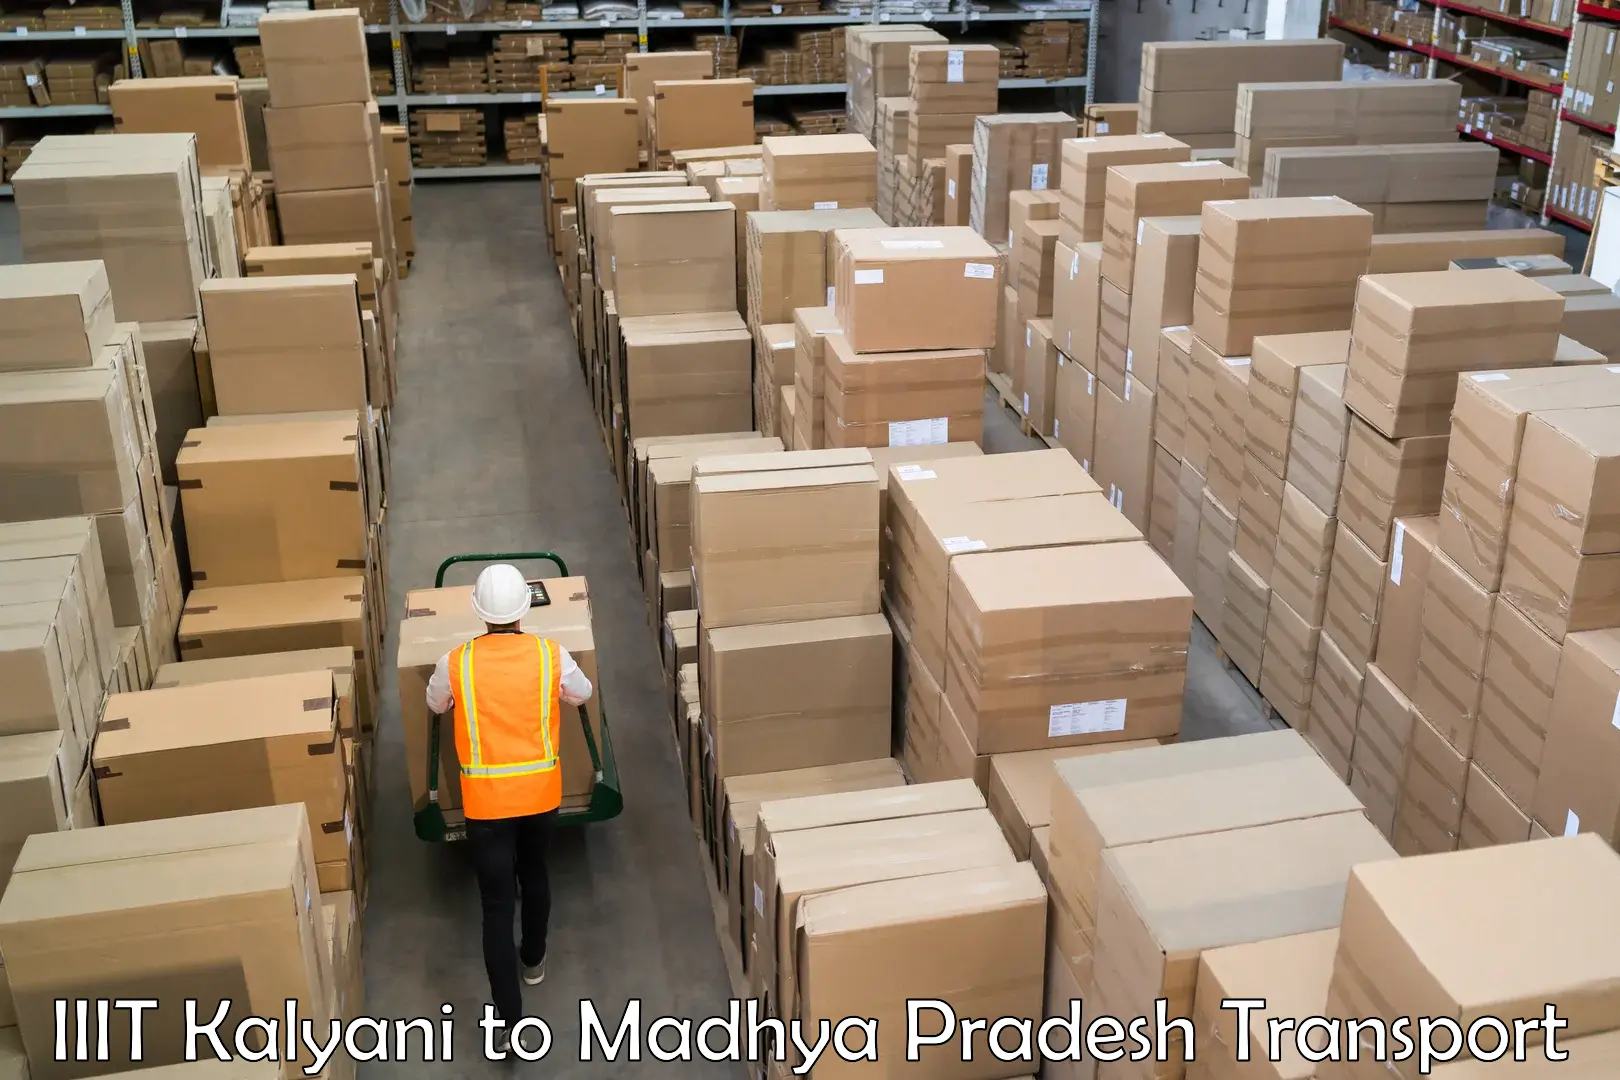 Lorry transport service IIIT Kalyani to Sausar